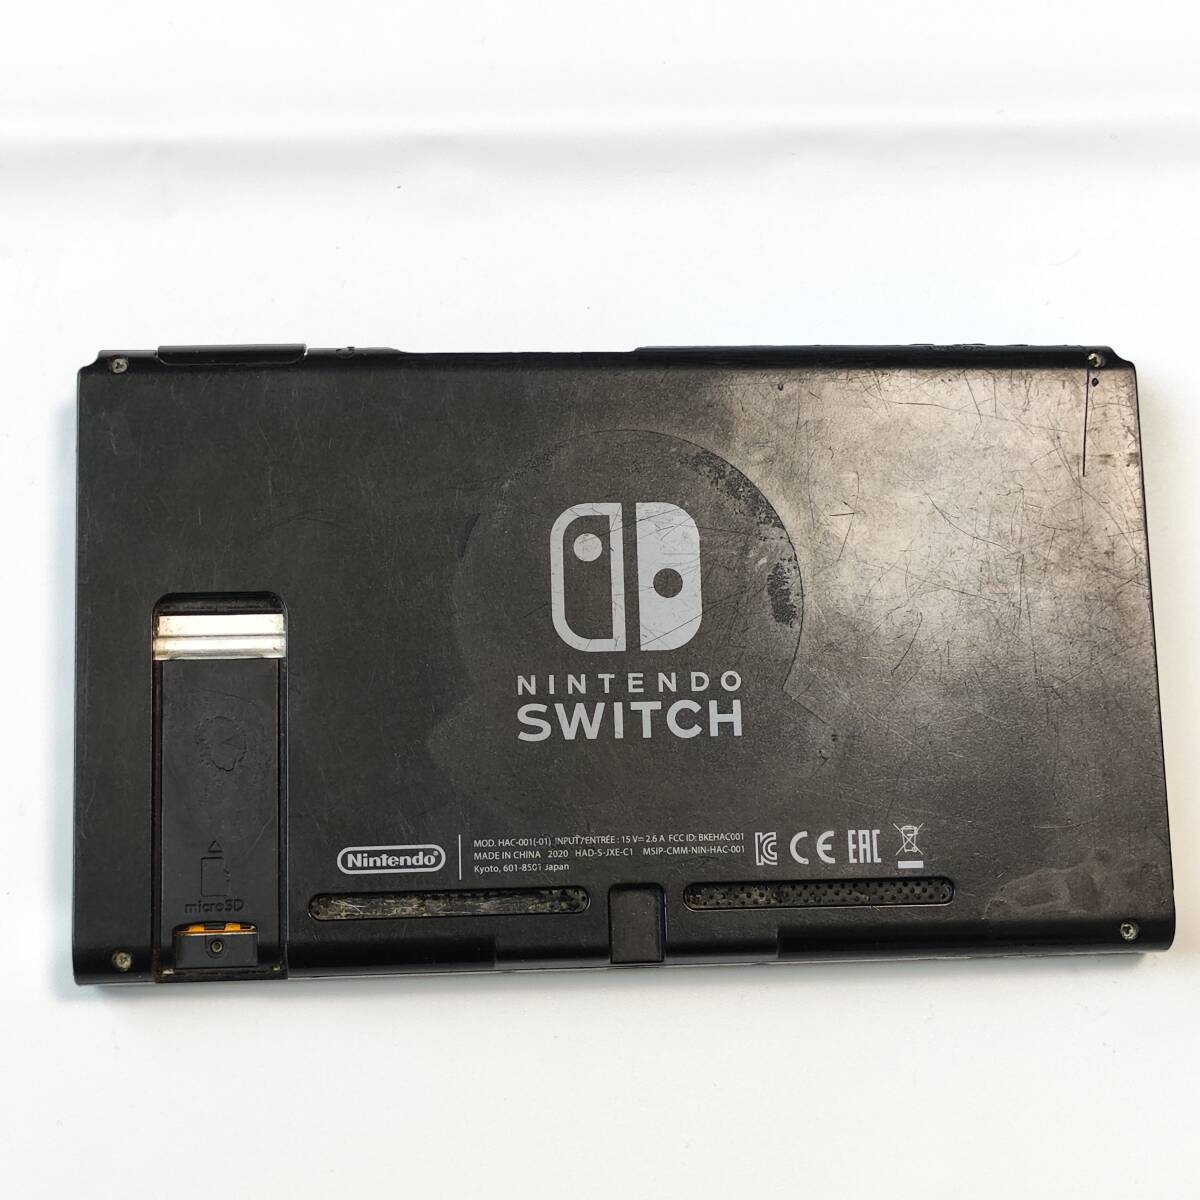 送料無料 Nintendo Switch ニンテンドー スイッチ 新モデル バッテリー改良型 本体のみ HAC-001(-01) ジャンク